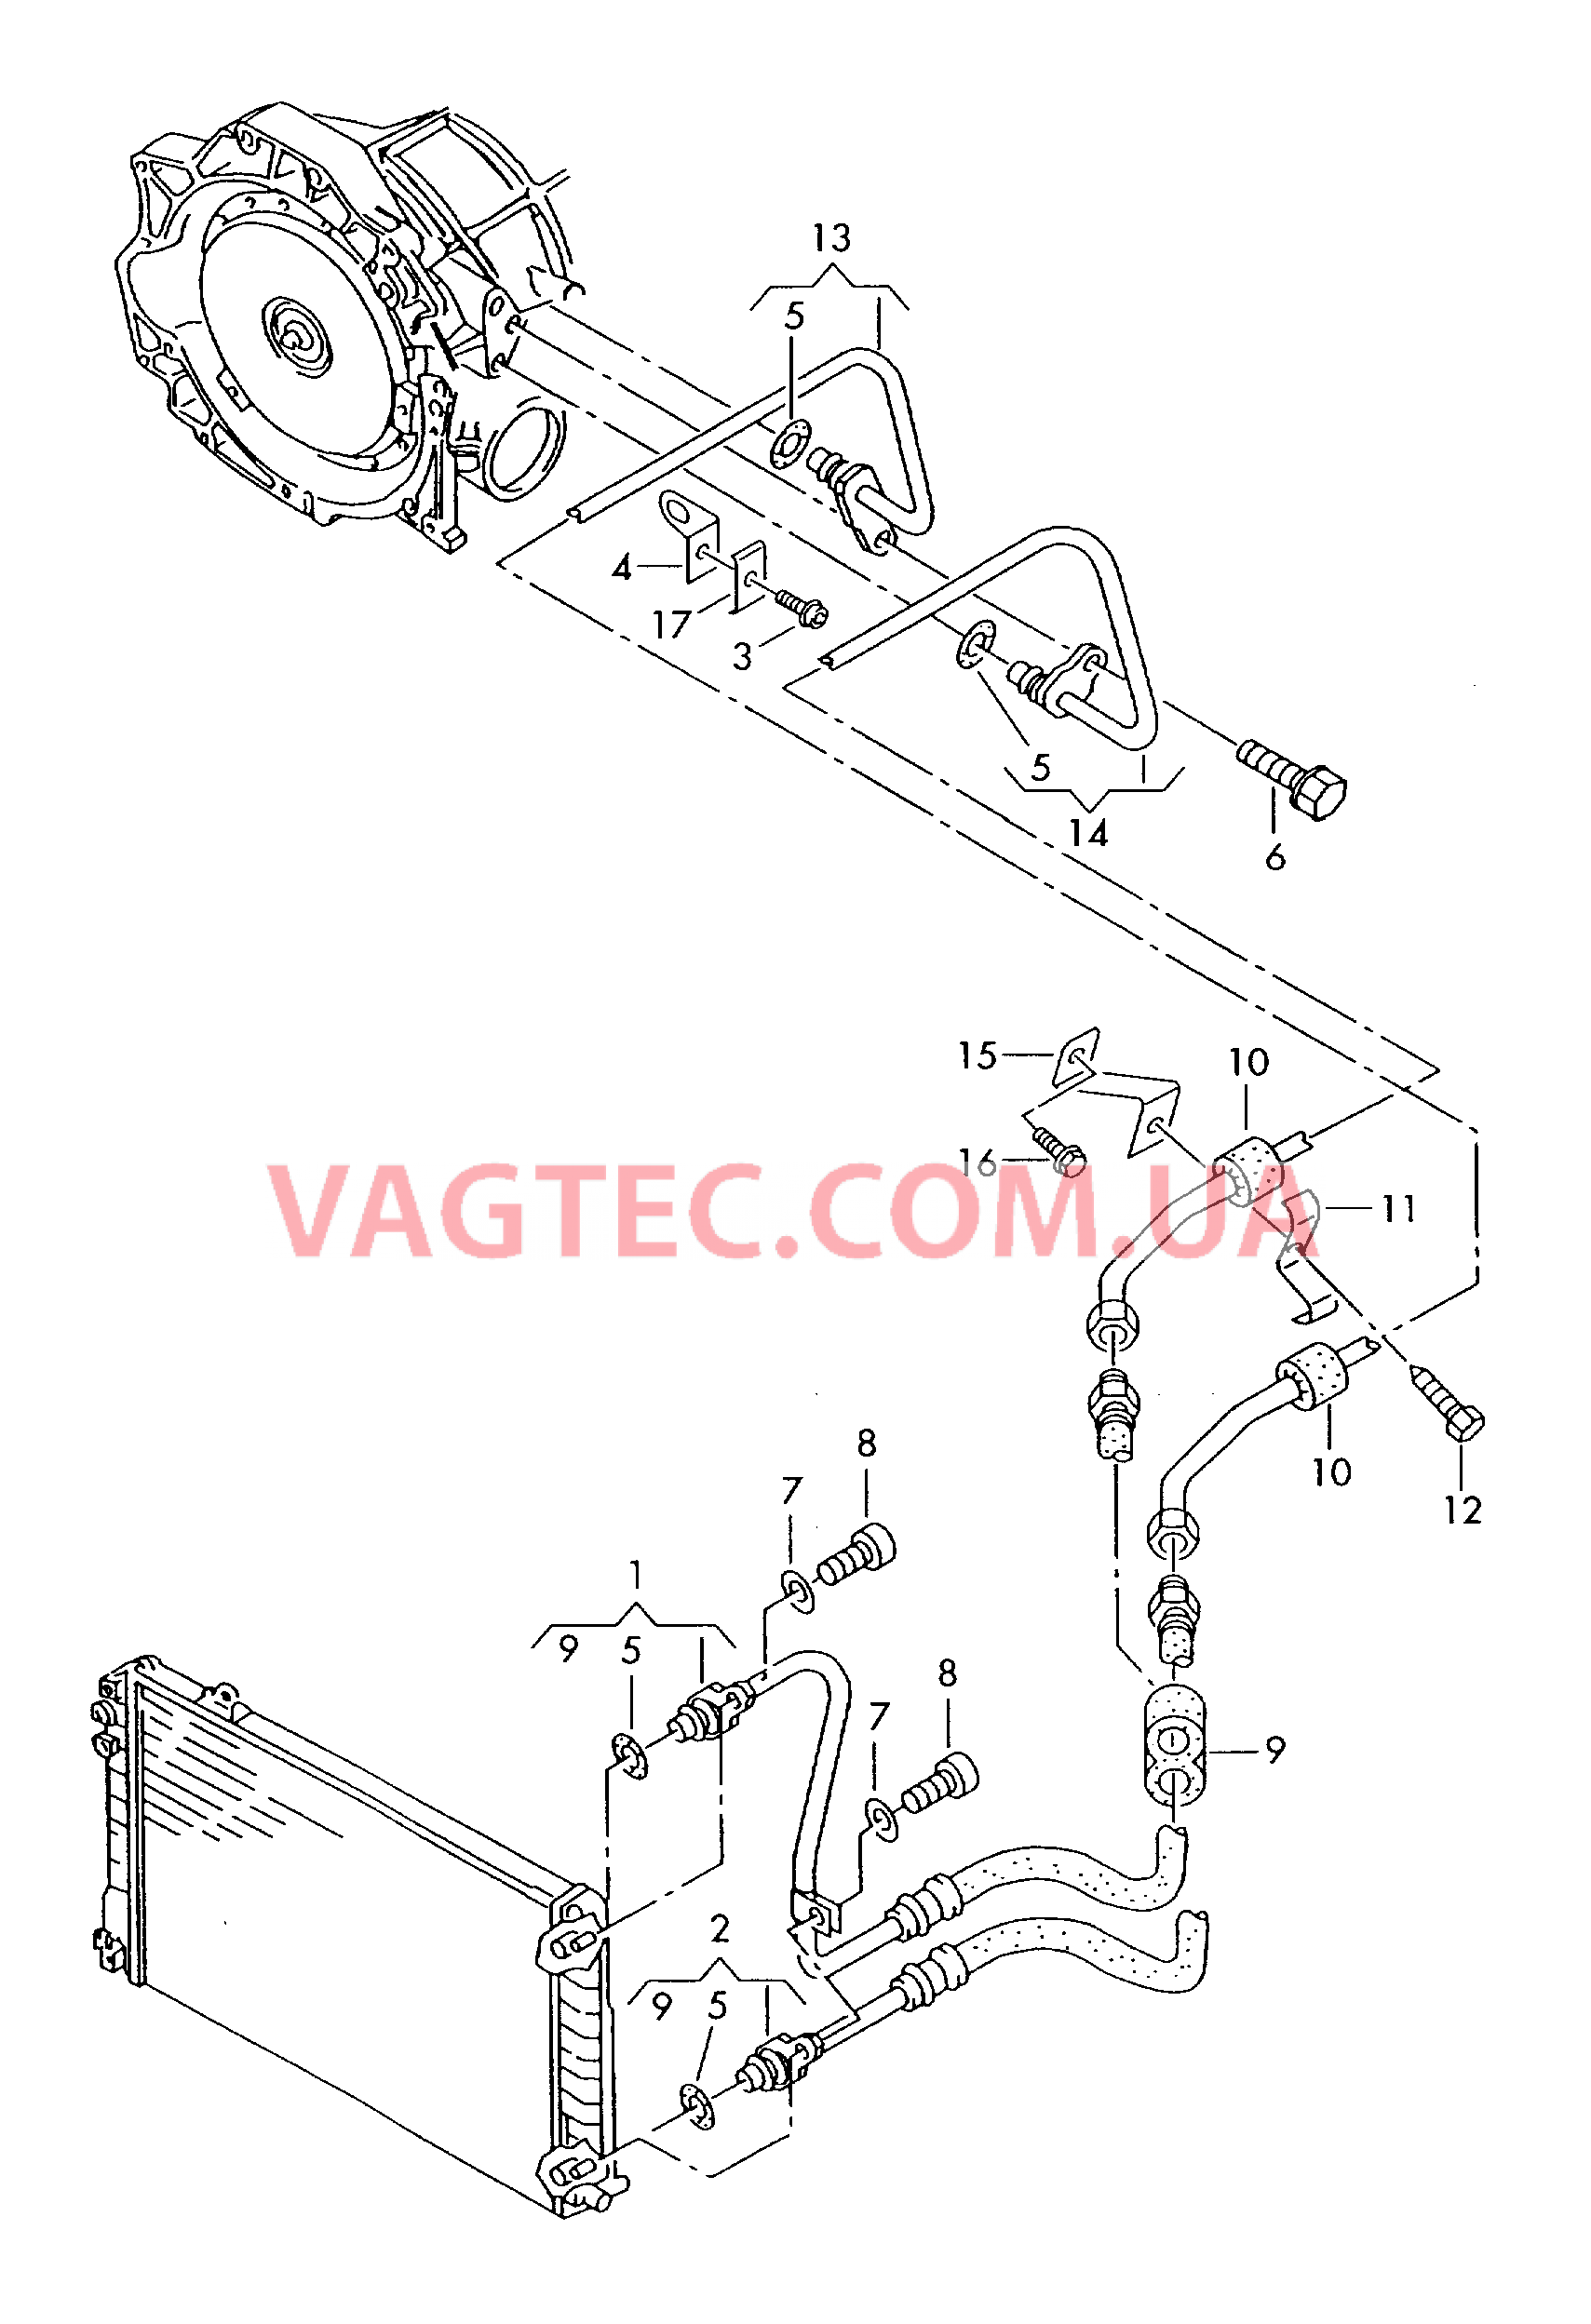 Напорный маслопровод для охлаждения масла коробки передач  для 5-ступенчатой АКП  для AUDI A6 2002